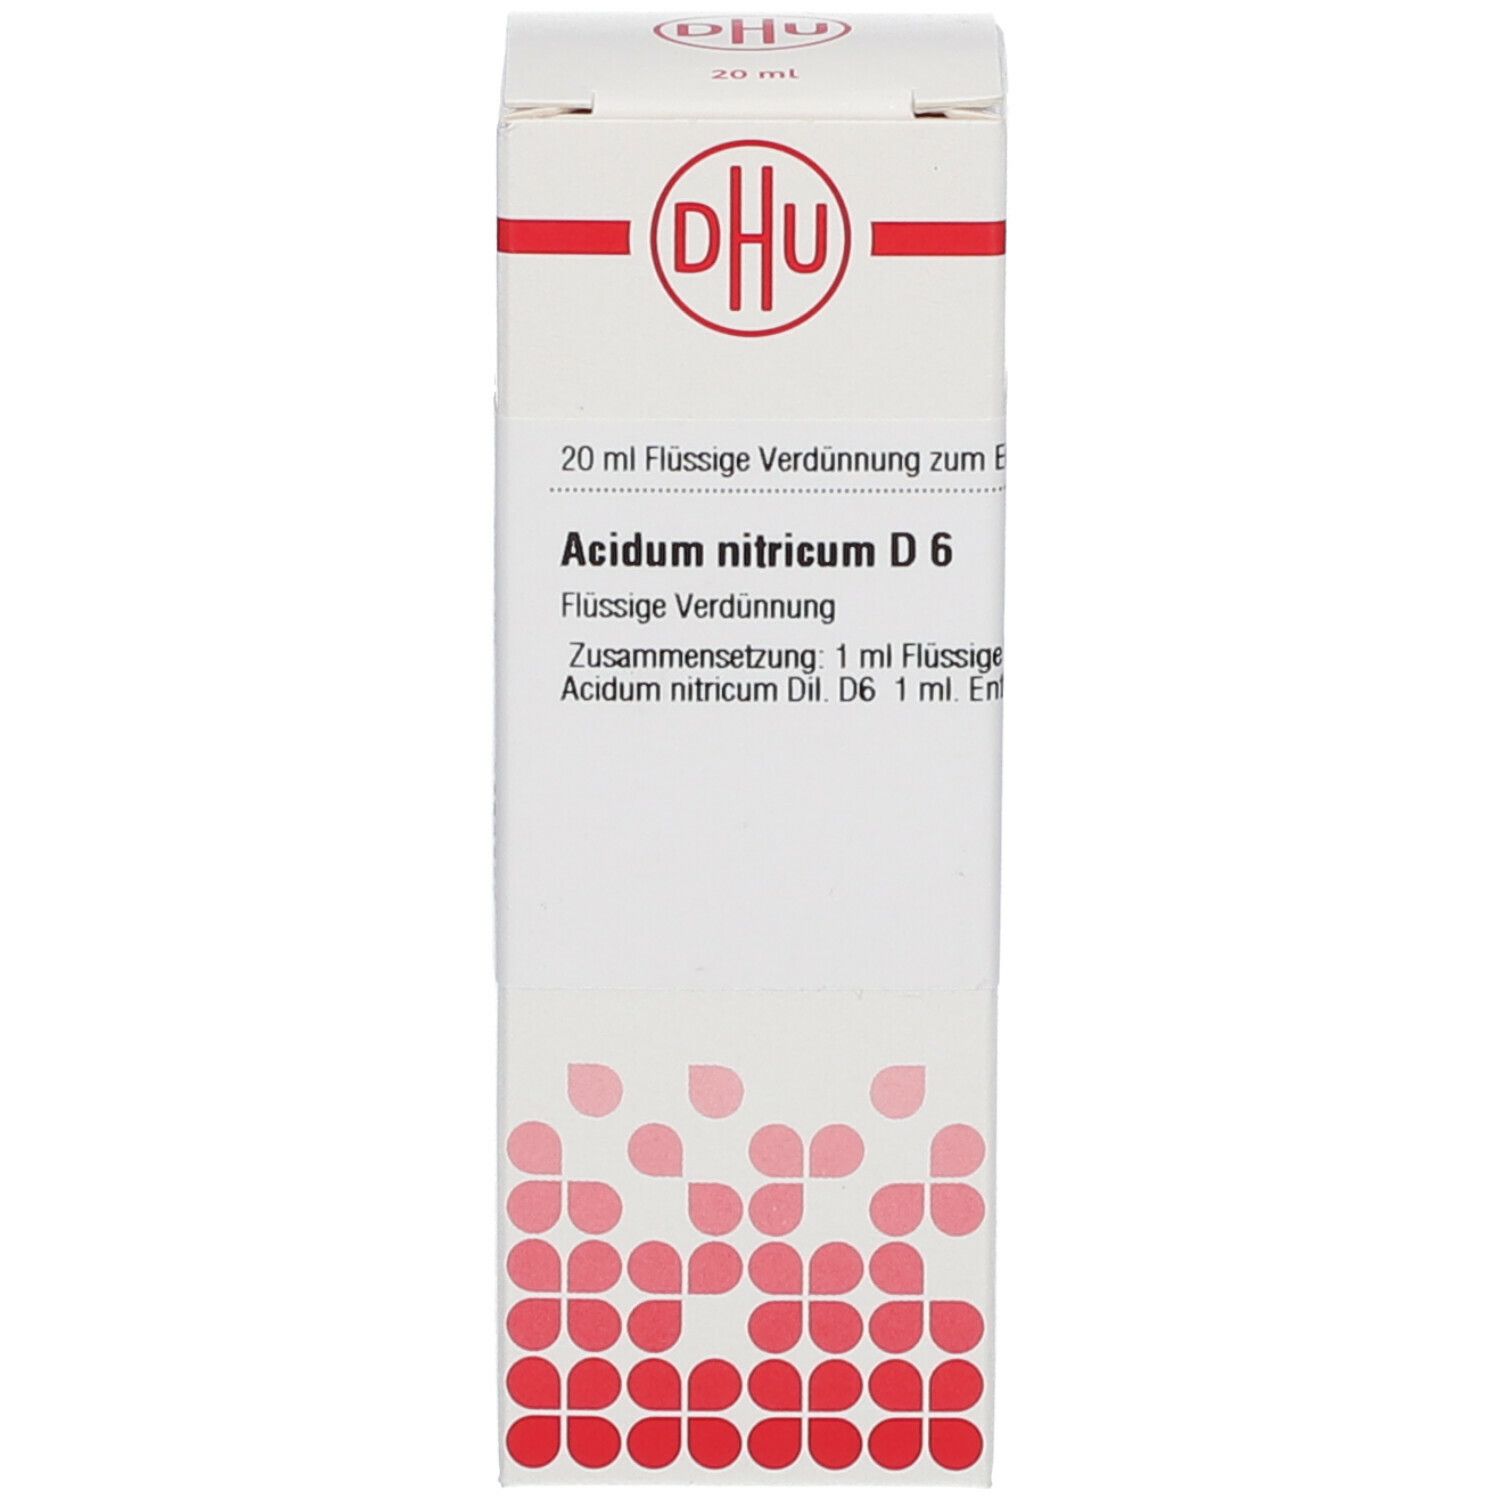 DHU Acidum Nitricum D6